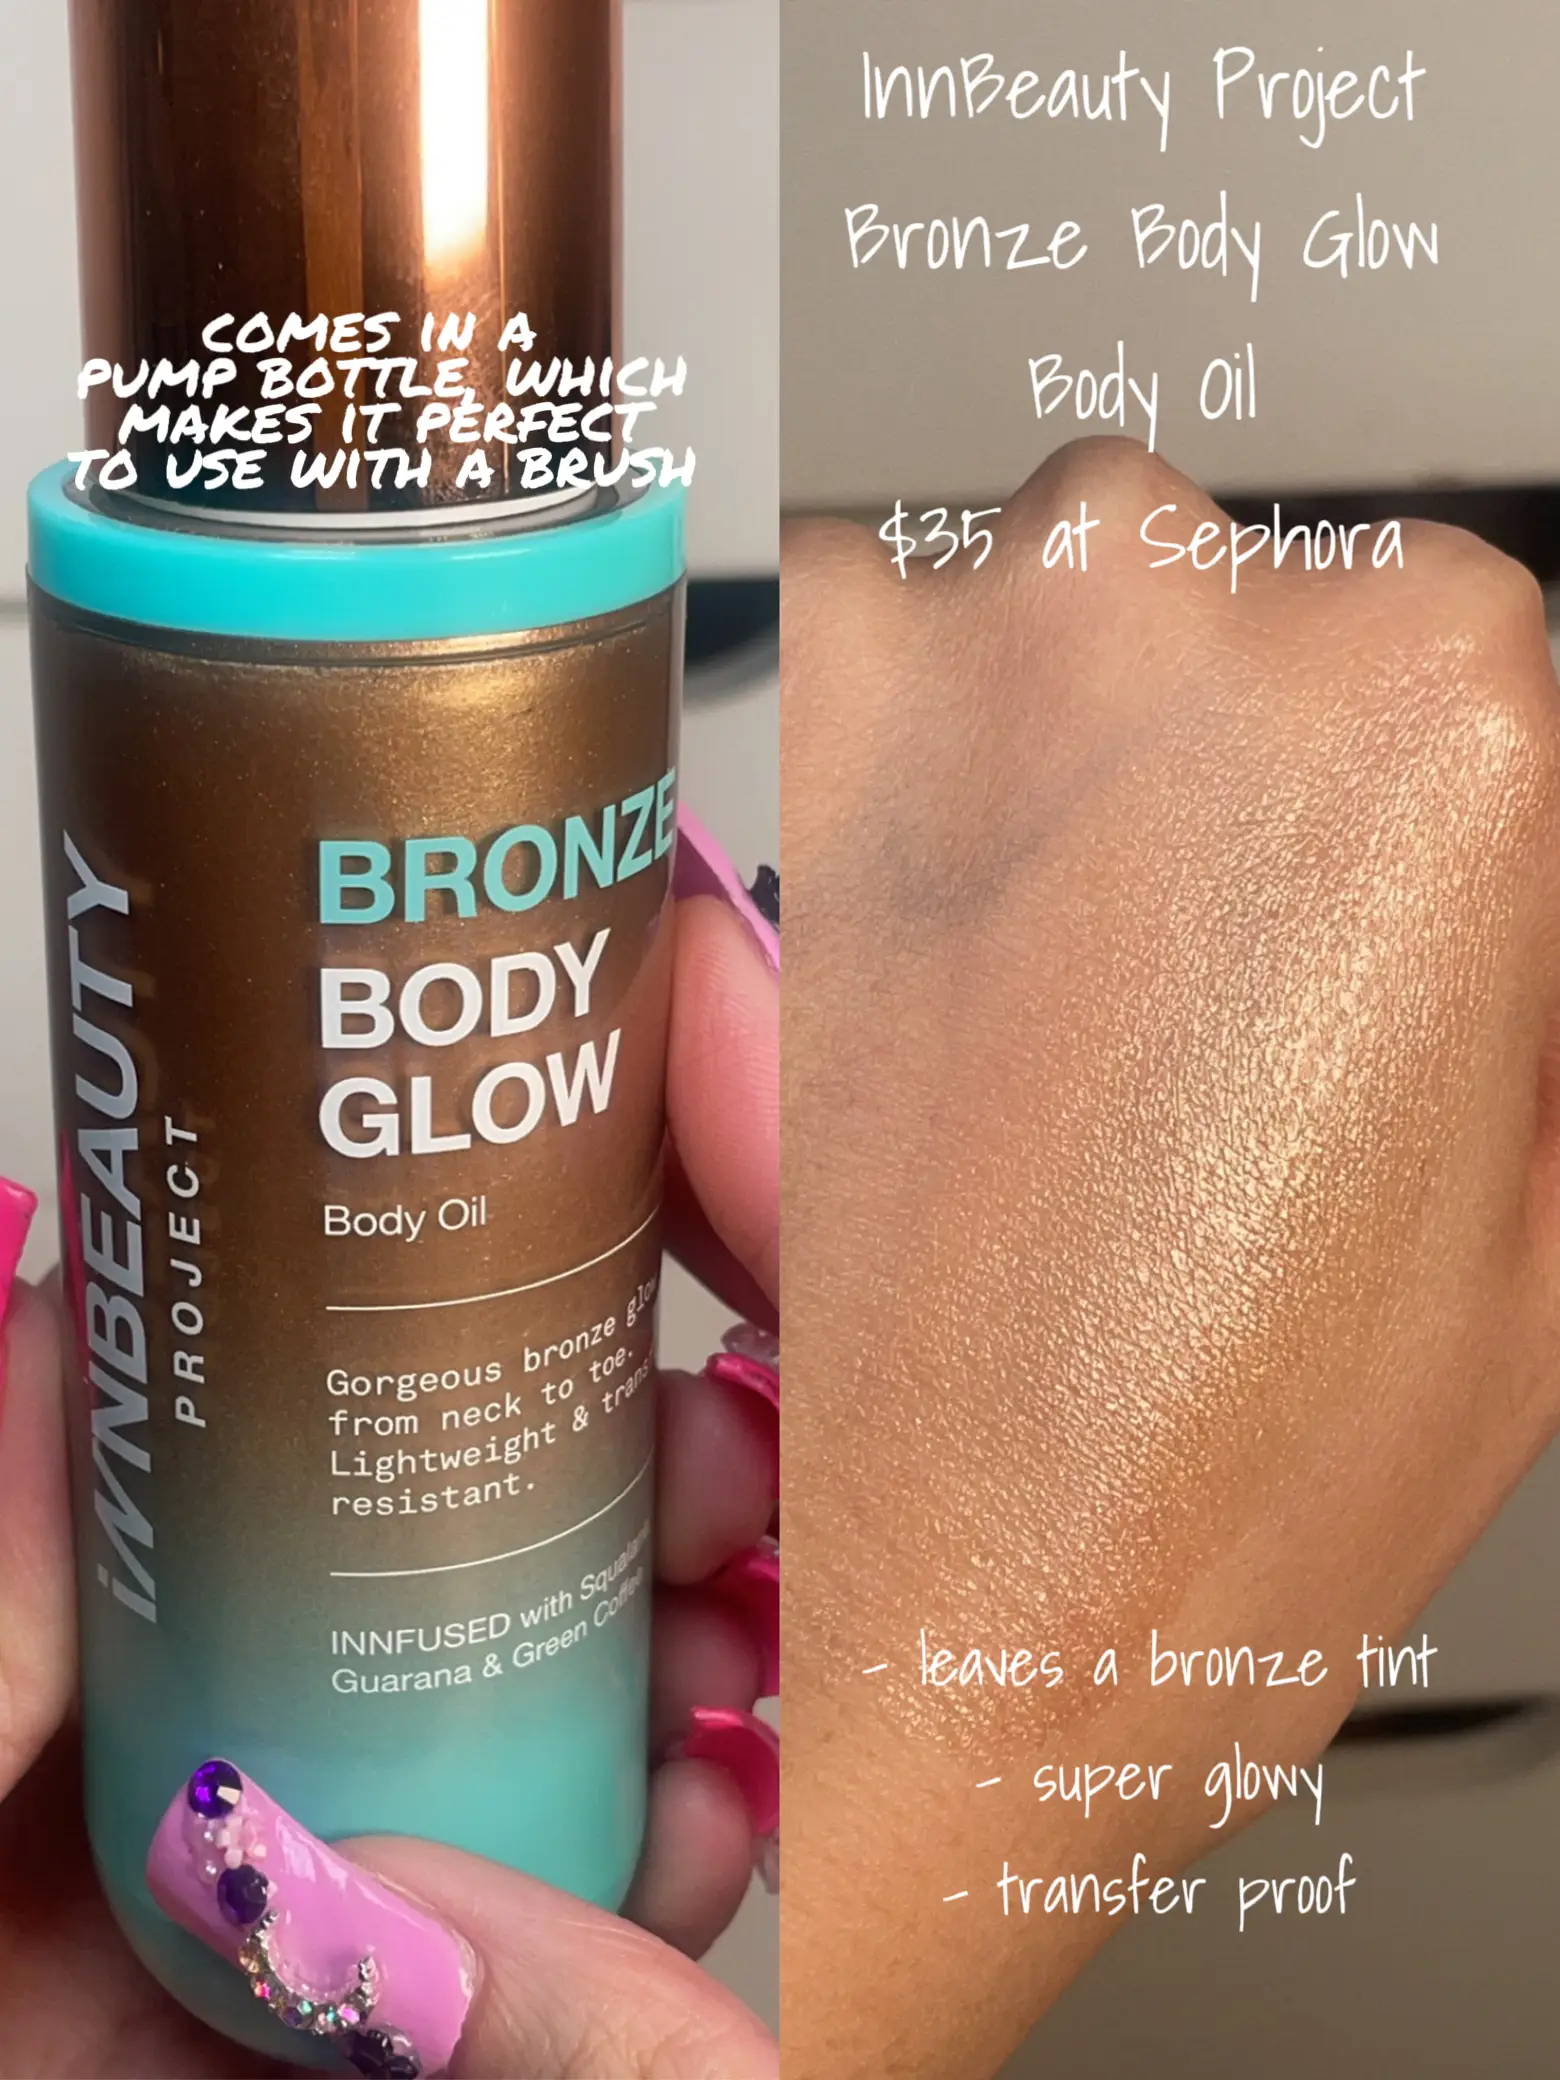 Bronze Body Glow Body Oil – INNBEAUTY PROJECT